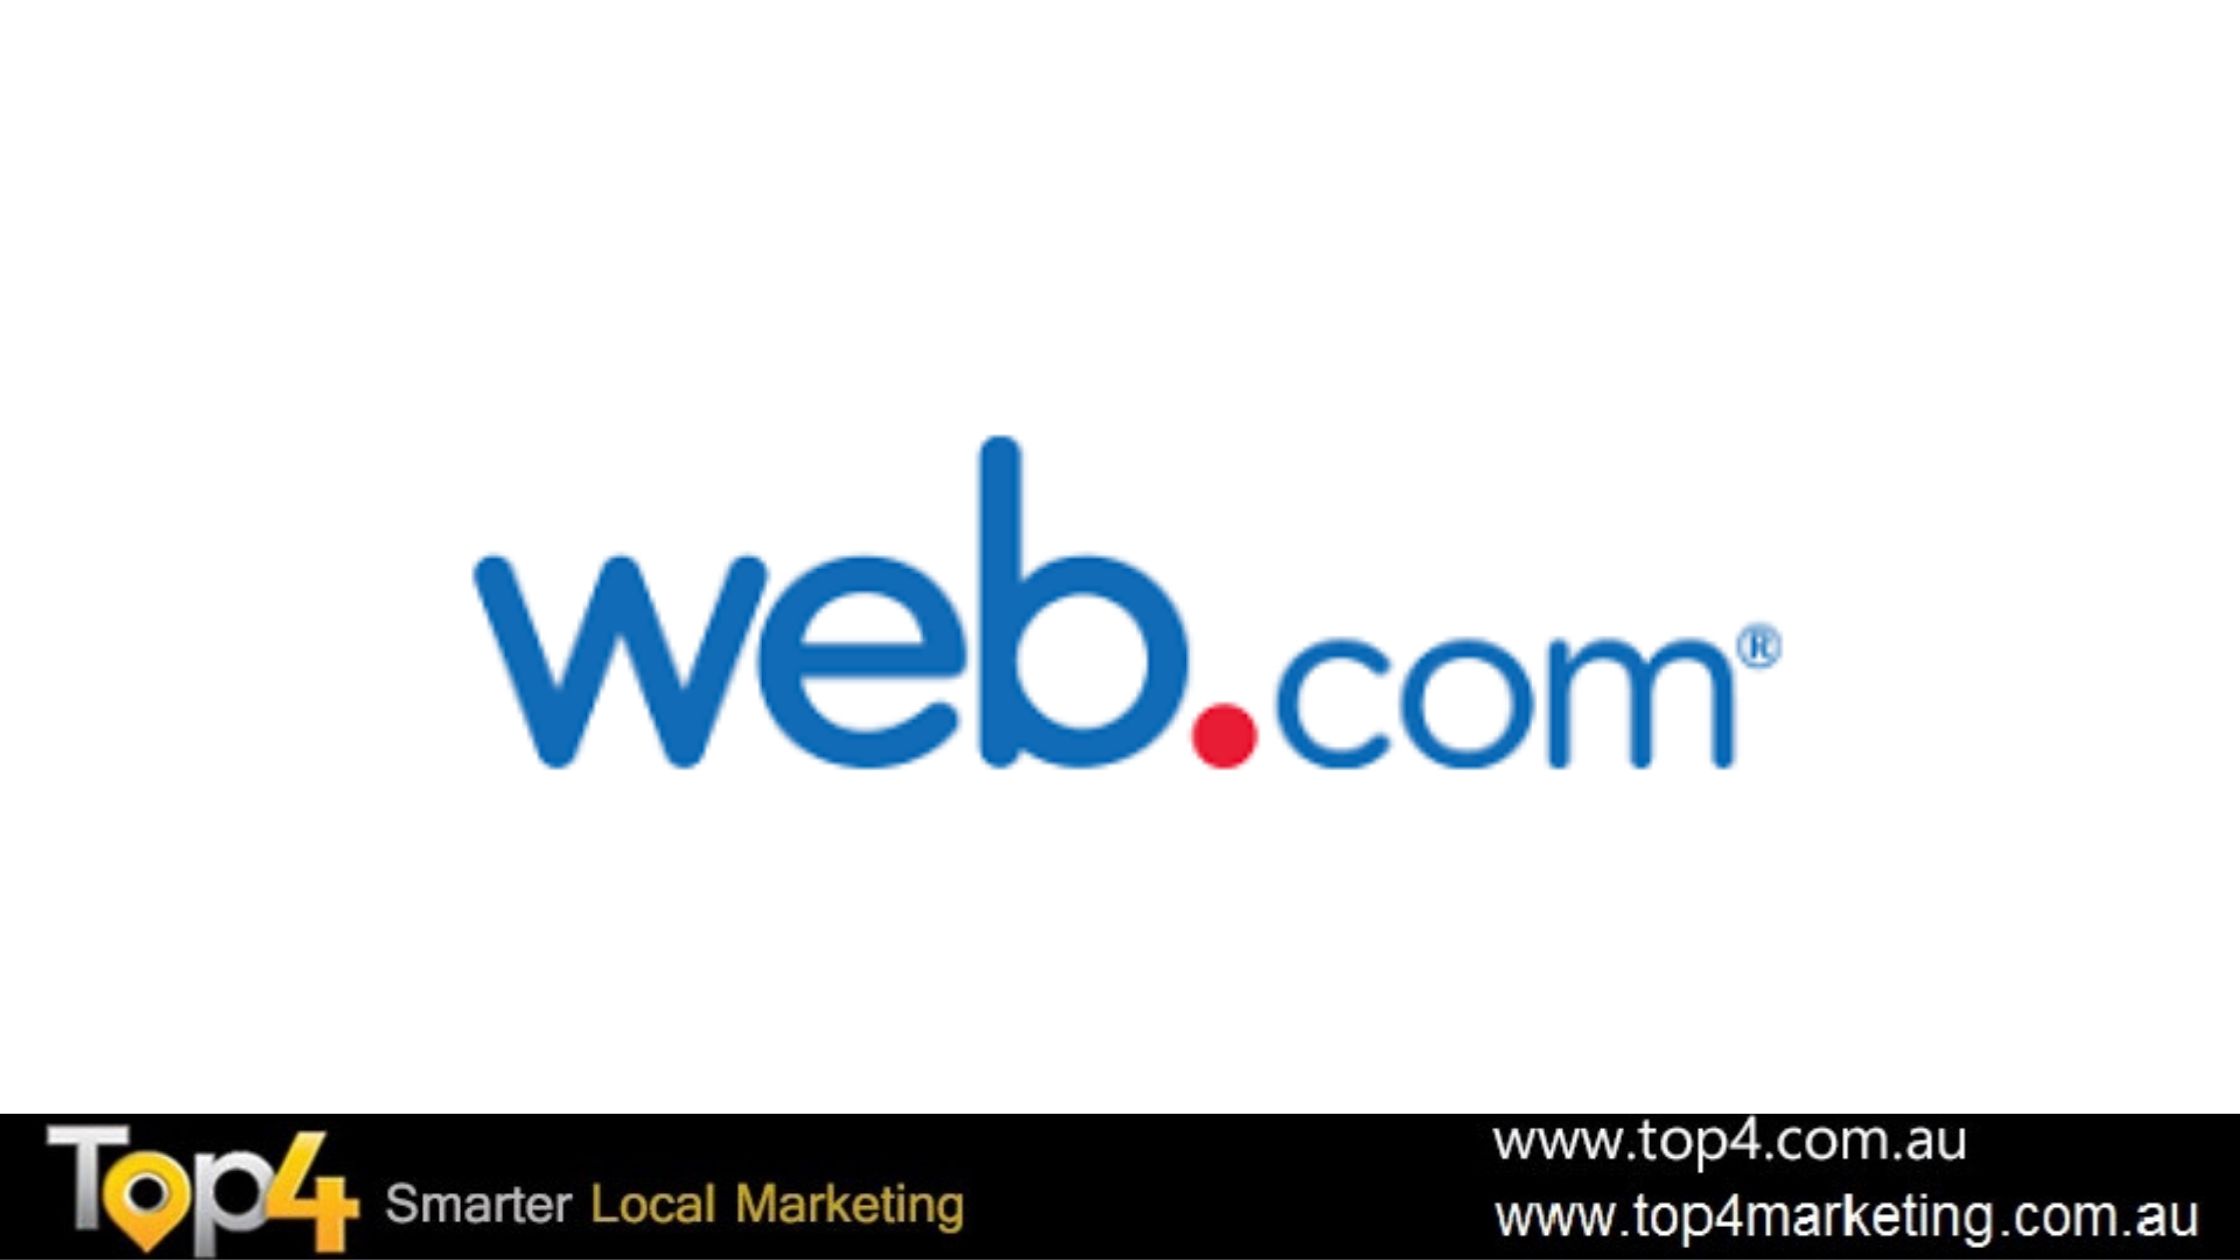 Web.com - Top4 Marketing